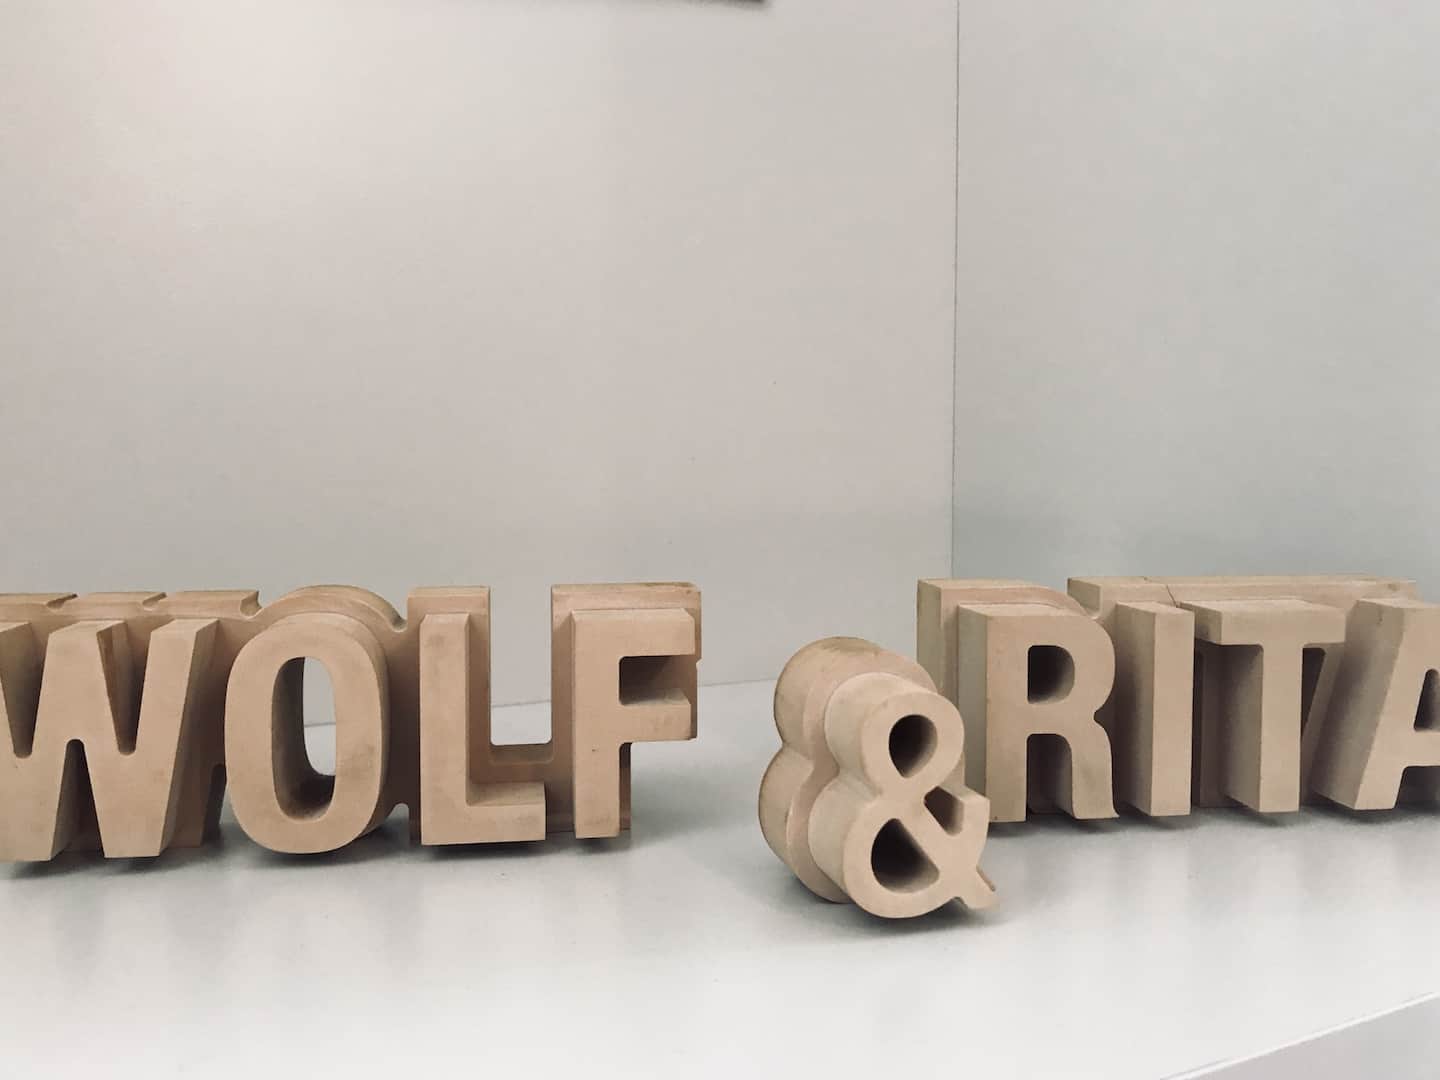 Wolf & Rita HQ in Portugal